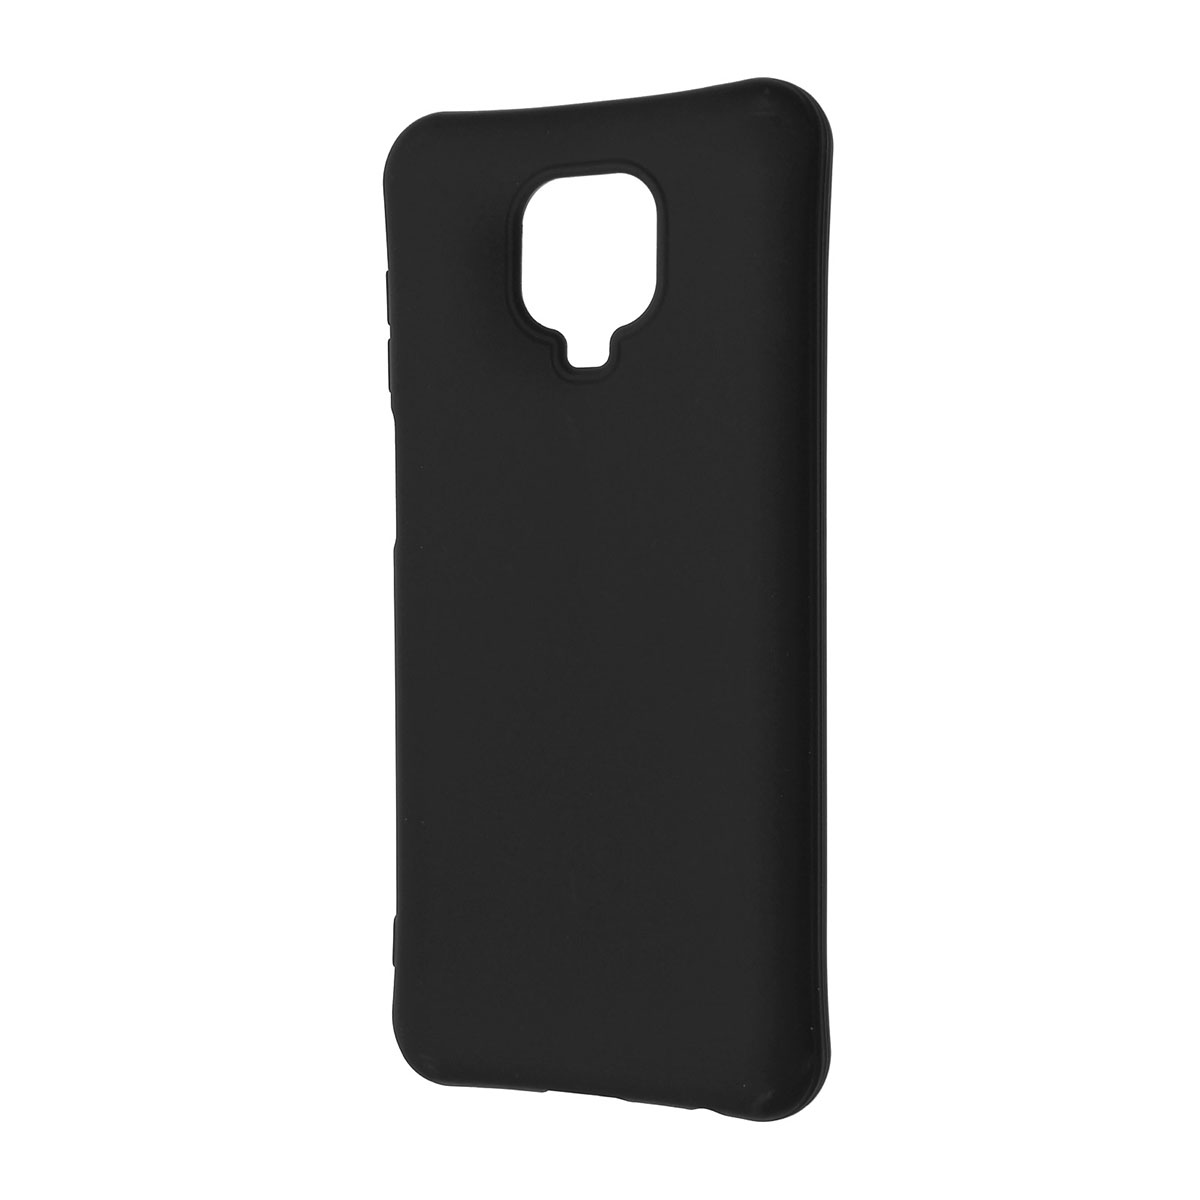 Чехол накладка SLIM MATTE для XIAOMI Redmi Note 9 Pro, Redmi Note 9, силикон, матовый, цвет черный.